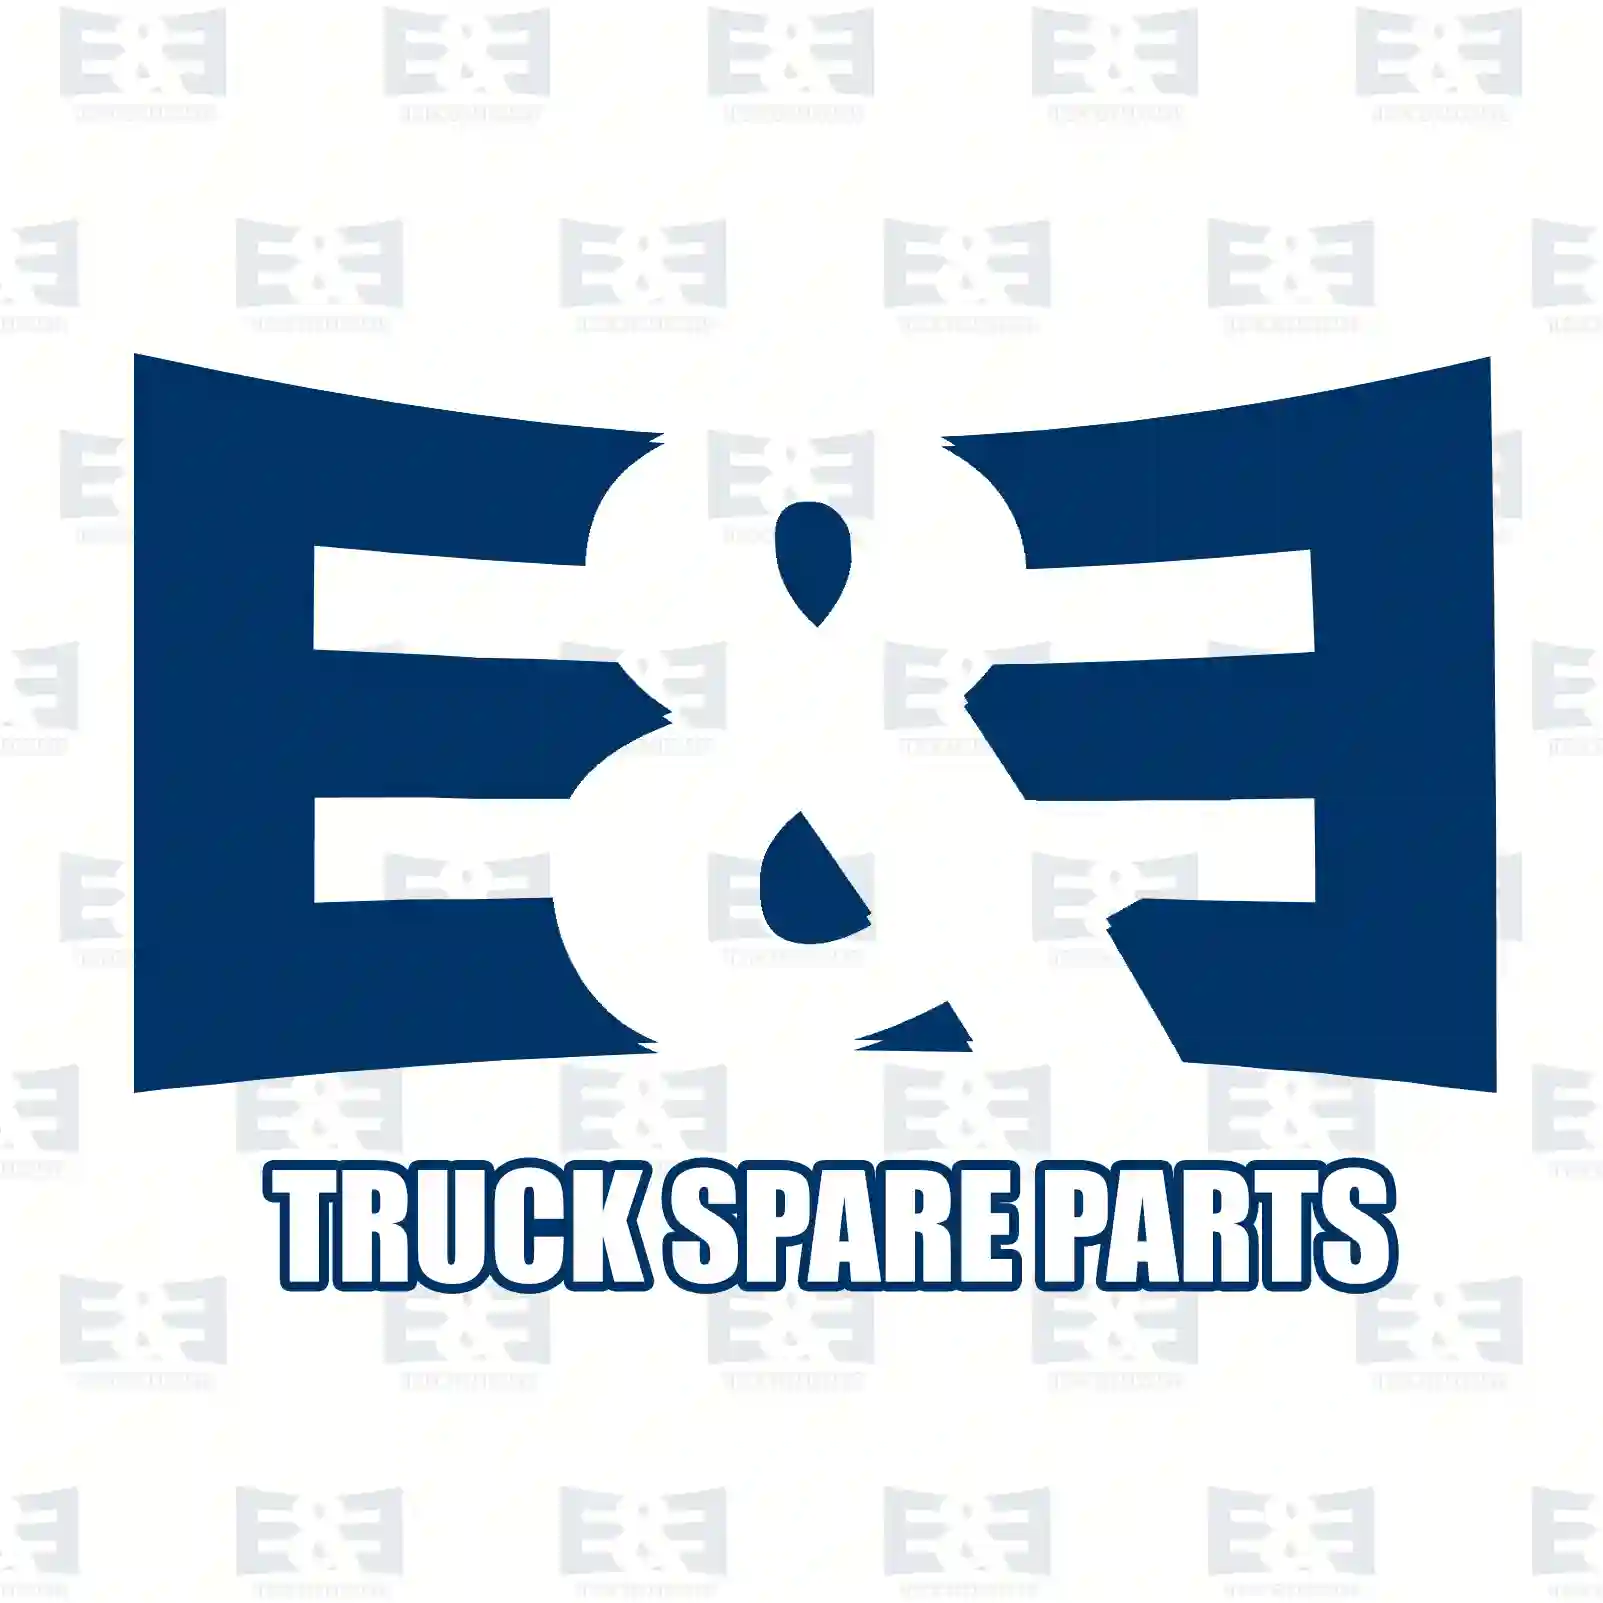 Lamp socket, 2E2299991, 1698161, ZG20600-0008 ||  2E2299991 E&E Truck Spare Parts | Truck Spare Parts, Auotomotive Spare Parts Lamp socket, 2E2299991, 1698161, ZG20600-0008 ||  2E2299991 E&E Truck Spare Parts | Truck Spare Parts, Auotomotive Spare Parts